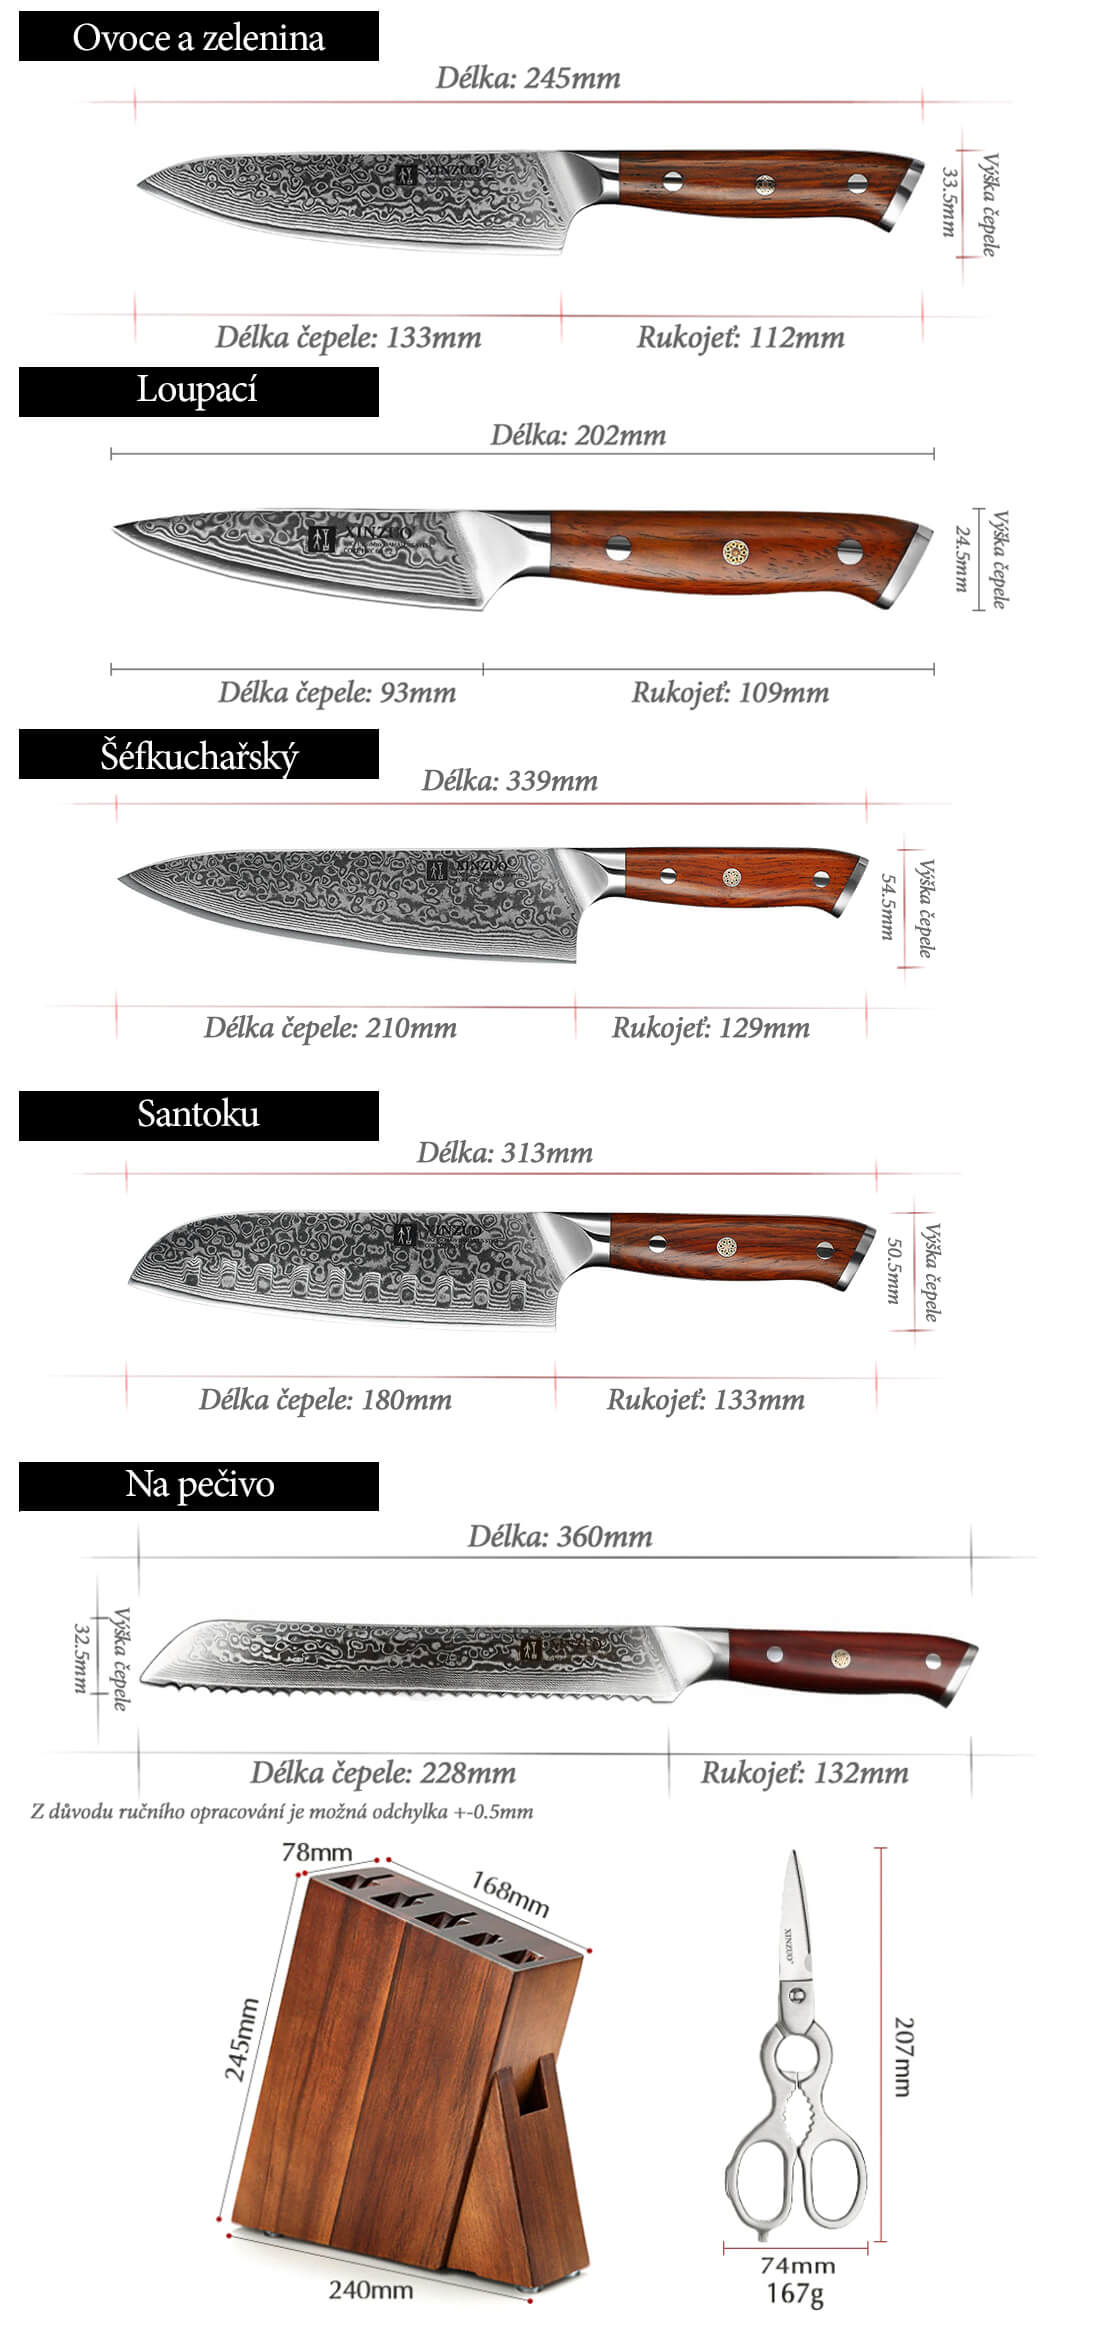 Sada nožů XinZuo Yu B13R se stojánkem a nůžkami - rozměry nožů